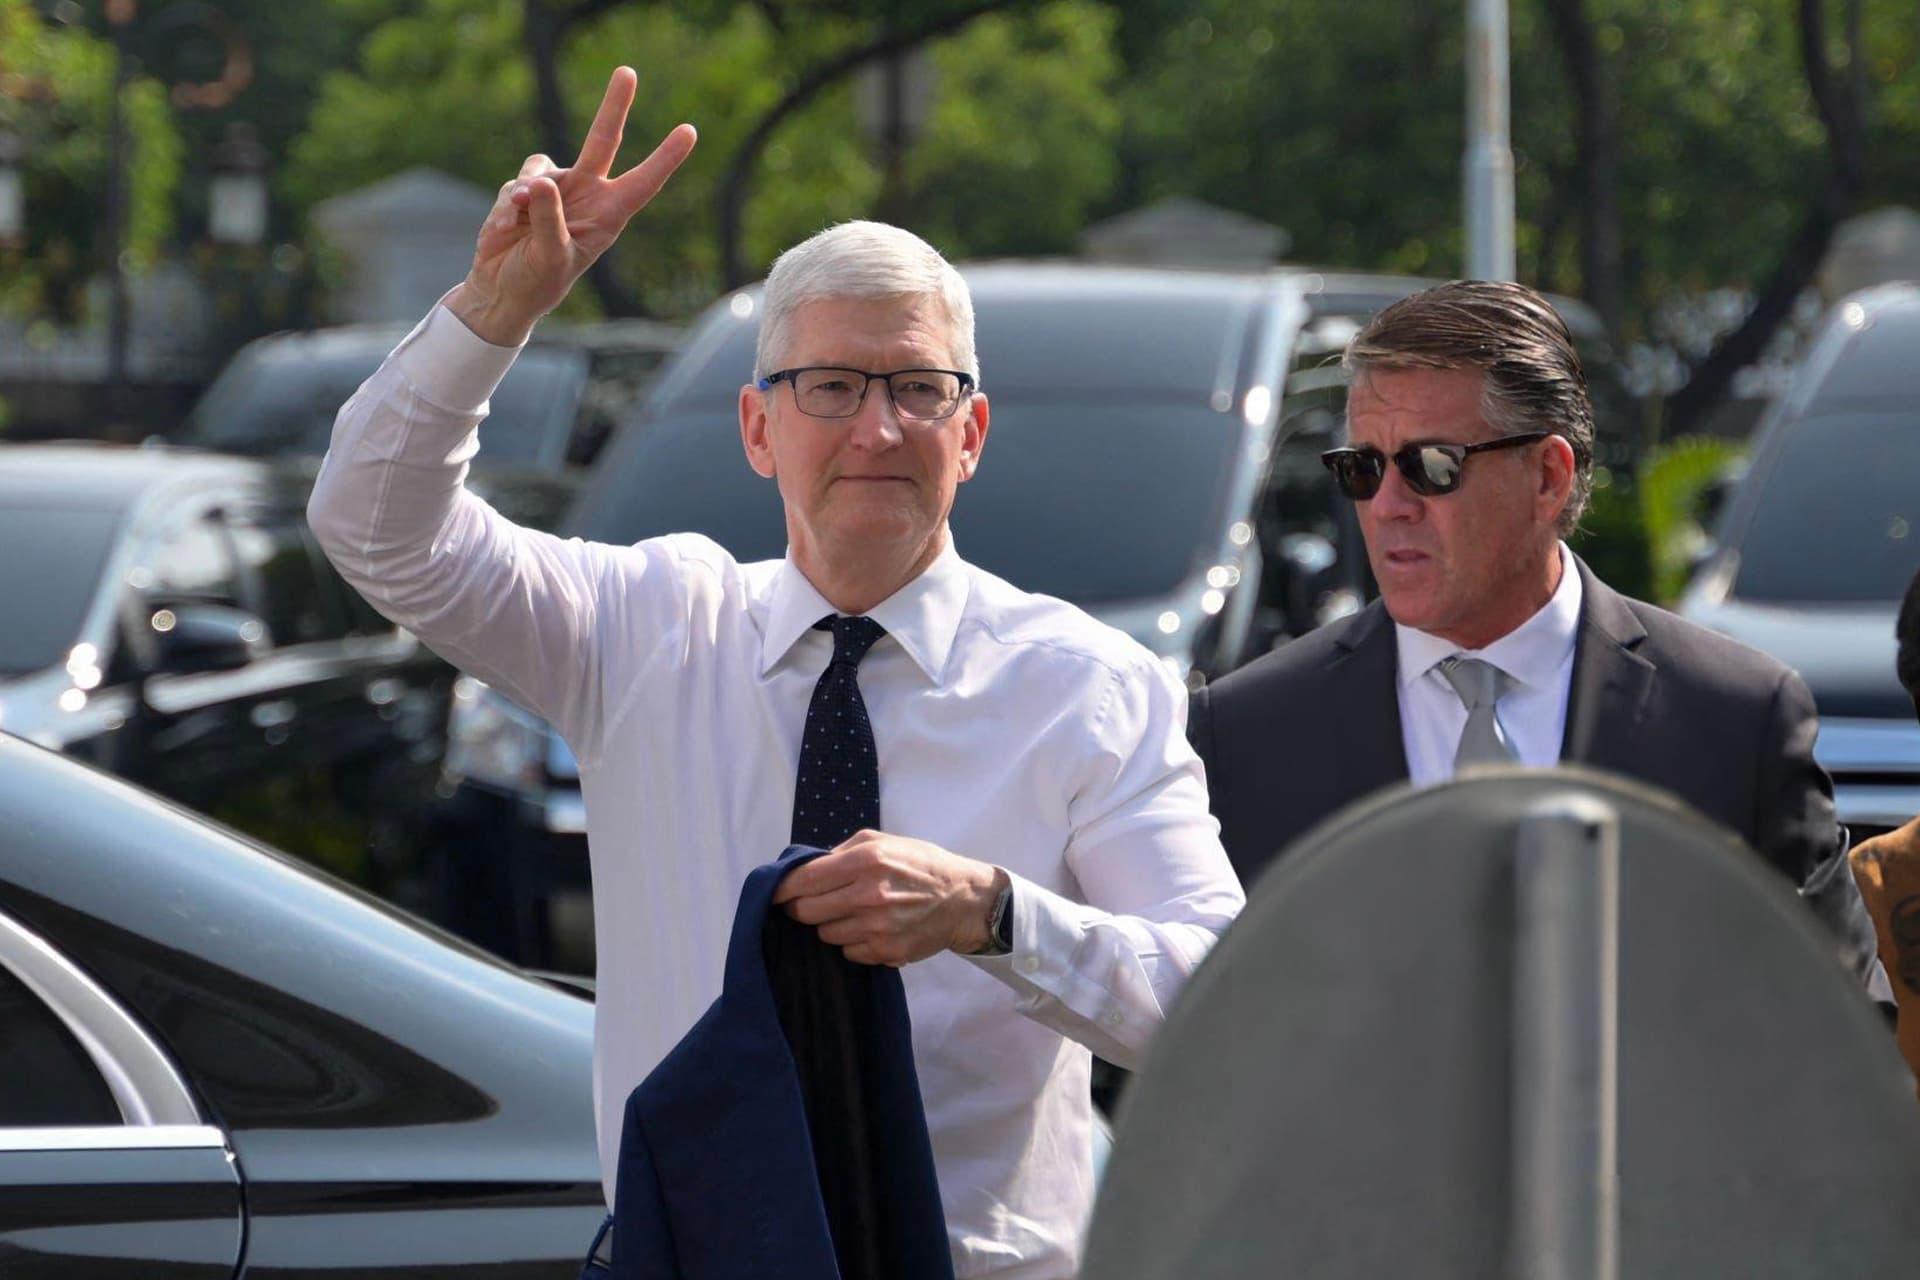 تیم کوک / Tim Cook مدیرعامل اپل Apple در حال نشان دادن علامت پیروزی